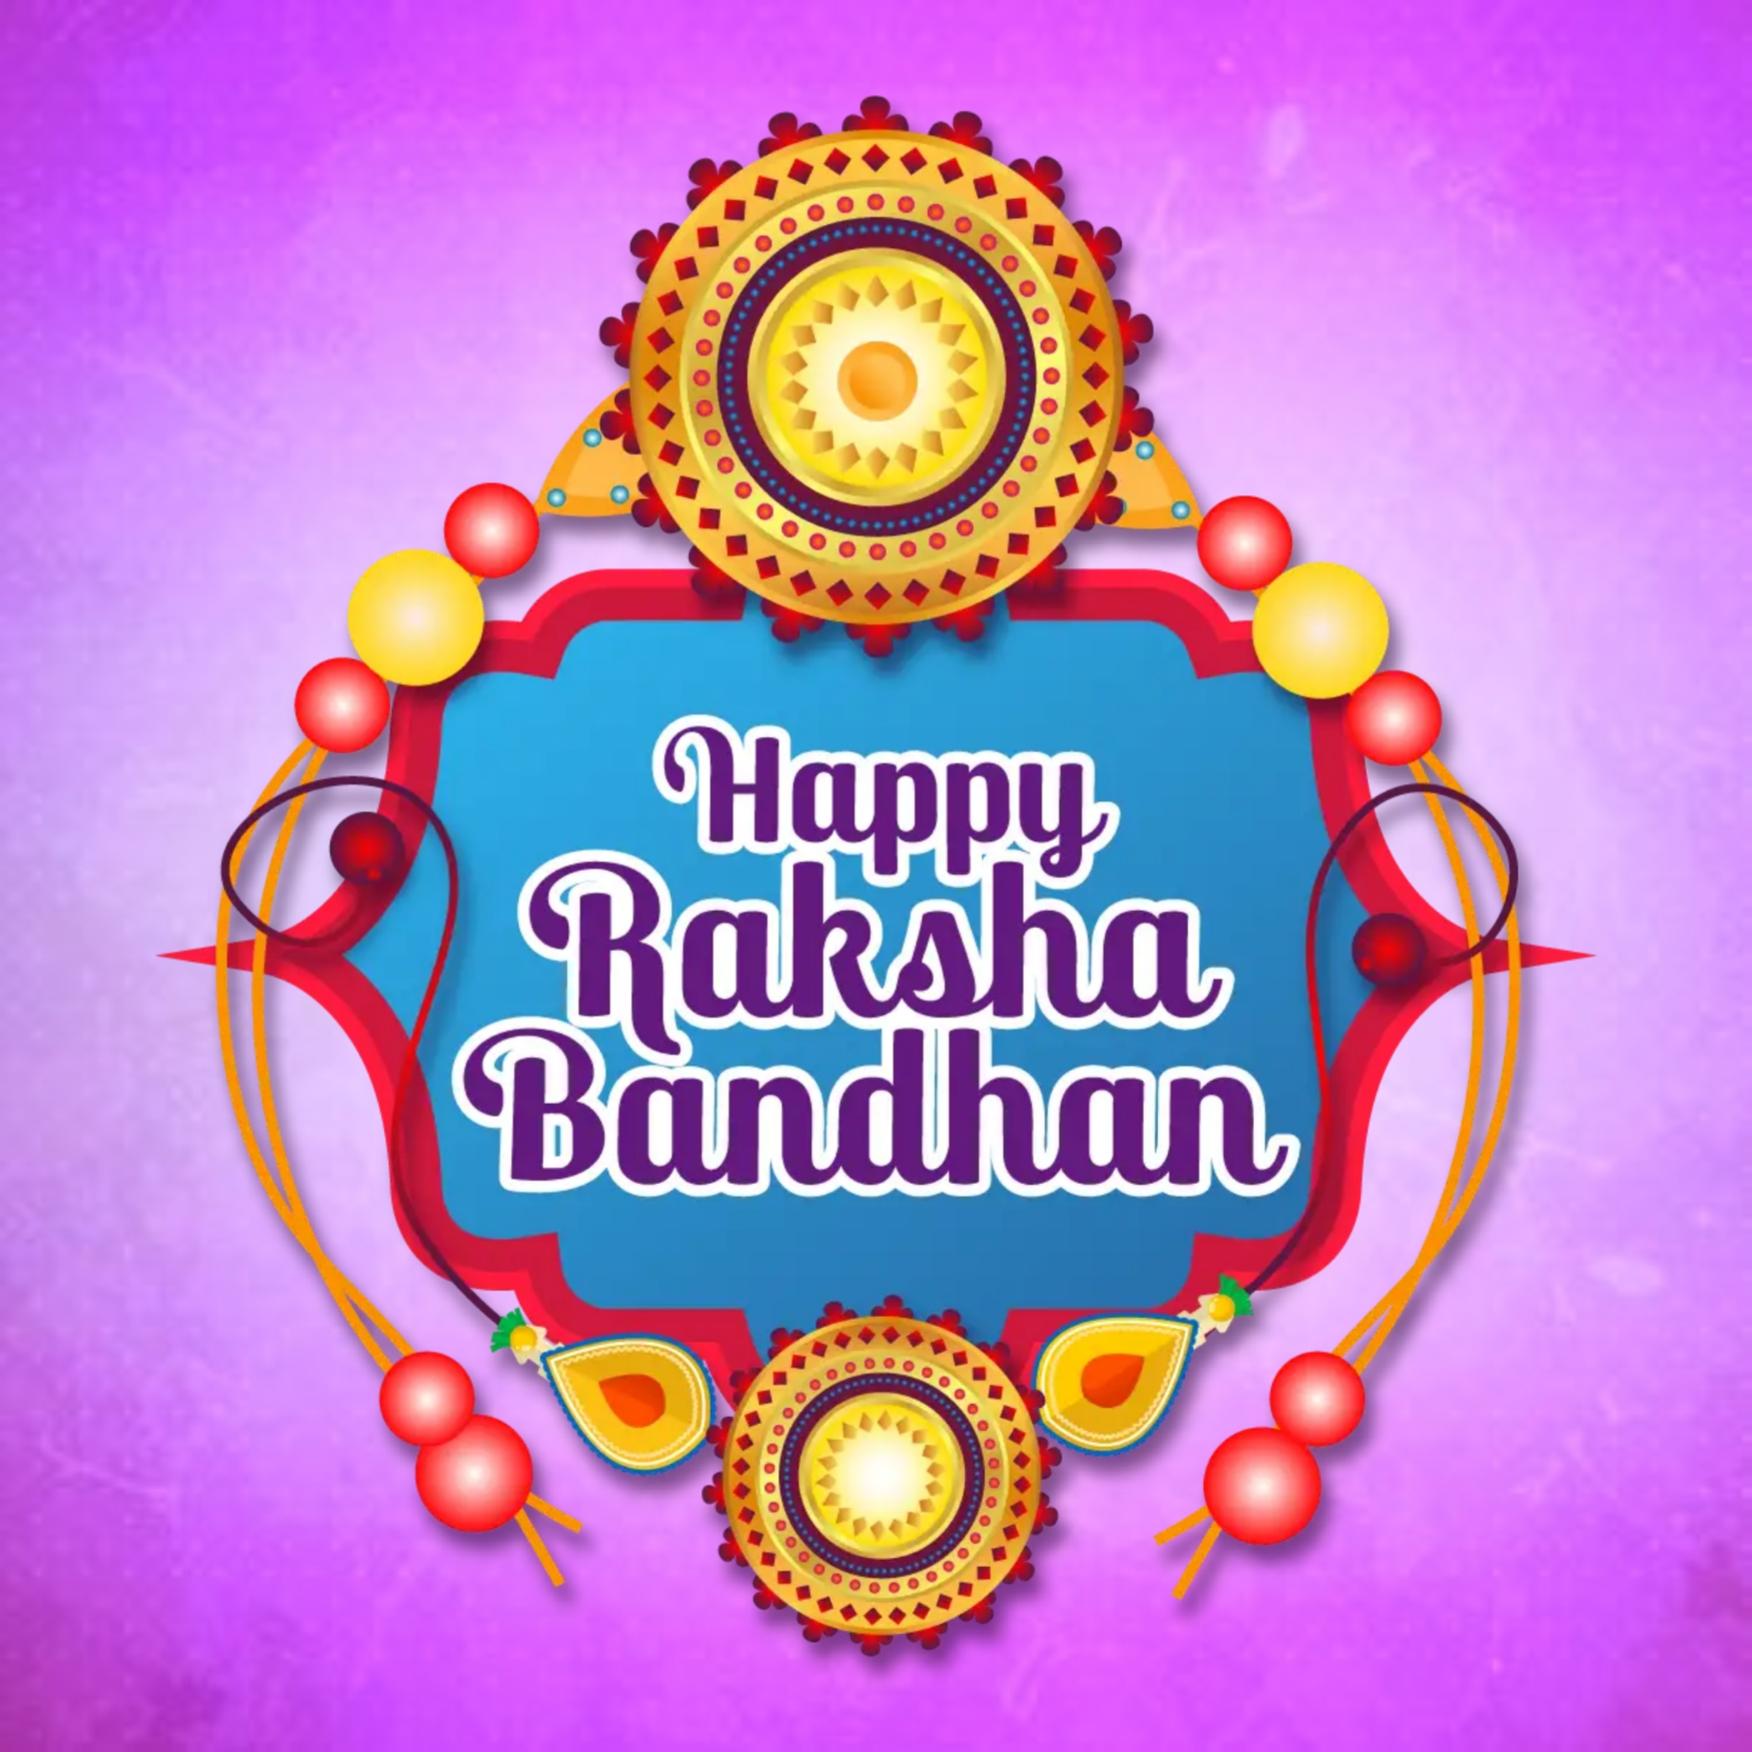 Whatsapp Happy Raksha Bandhan Images for DP